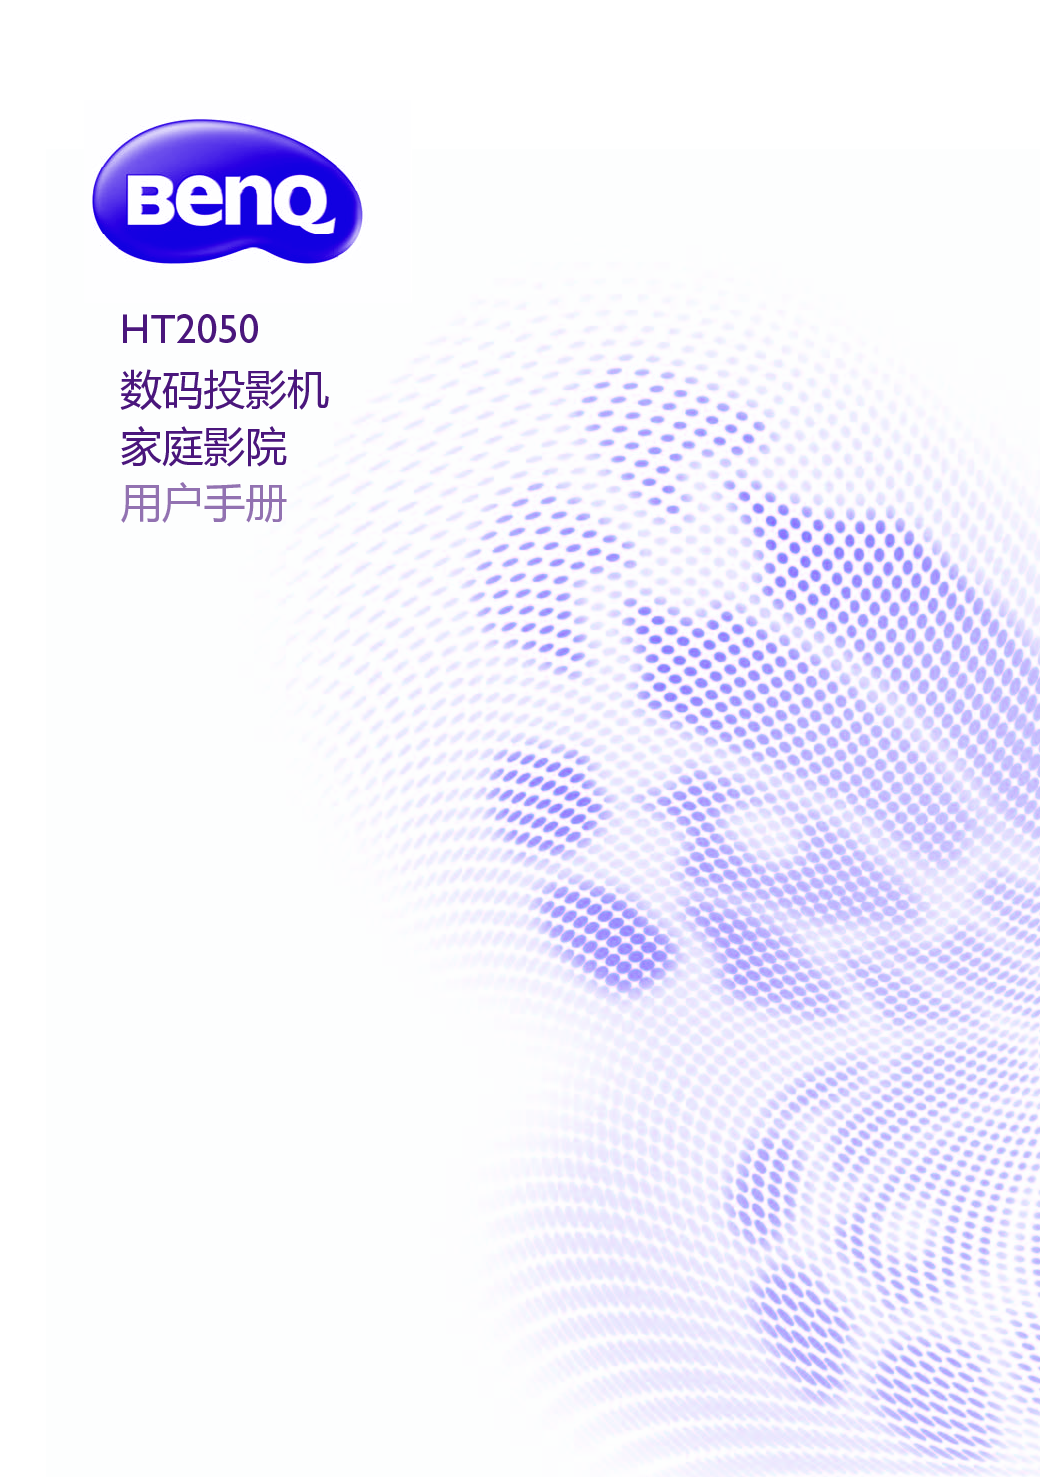 明基 Benq HT2050 用户手册 封面